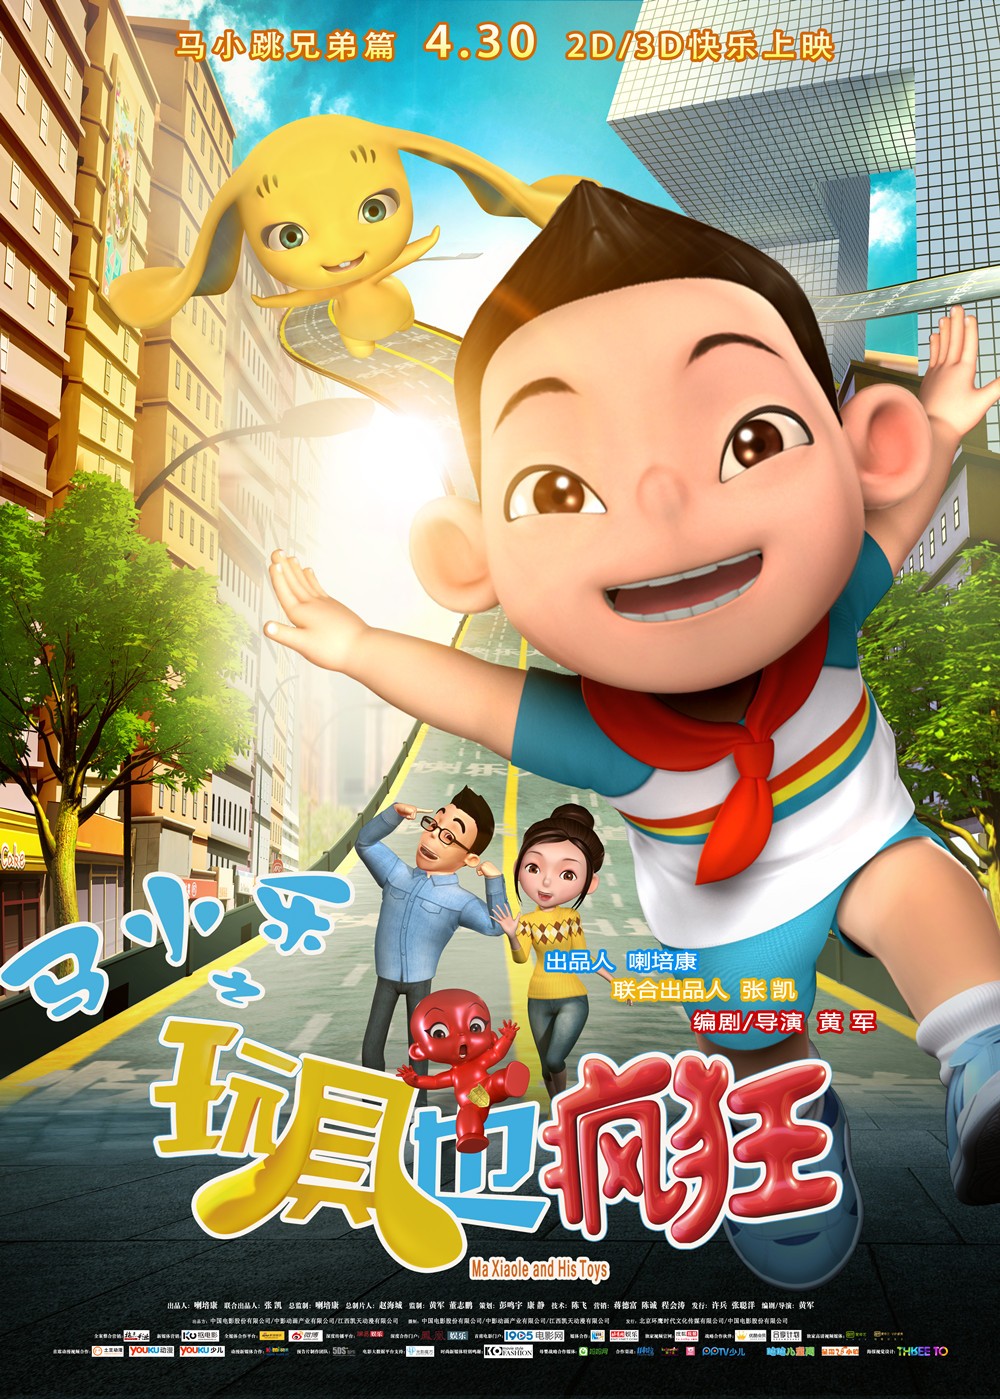 2016年国产奇幻动画片《马小乐之玩具也疯狂》HD国语中英双字